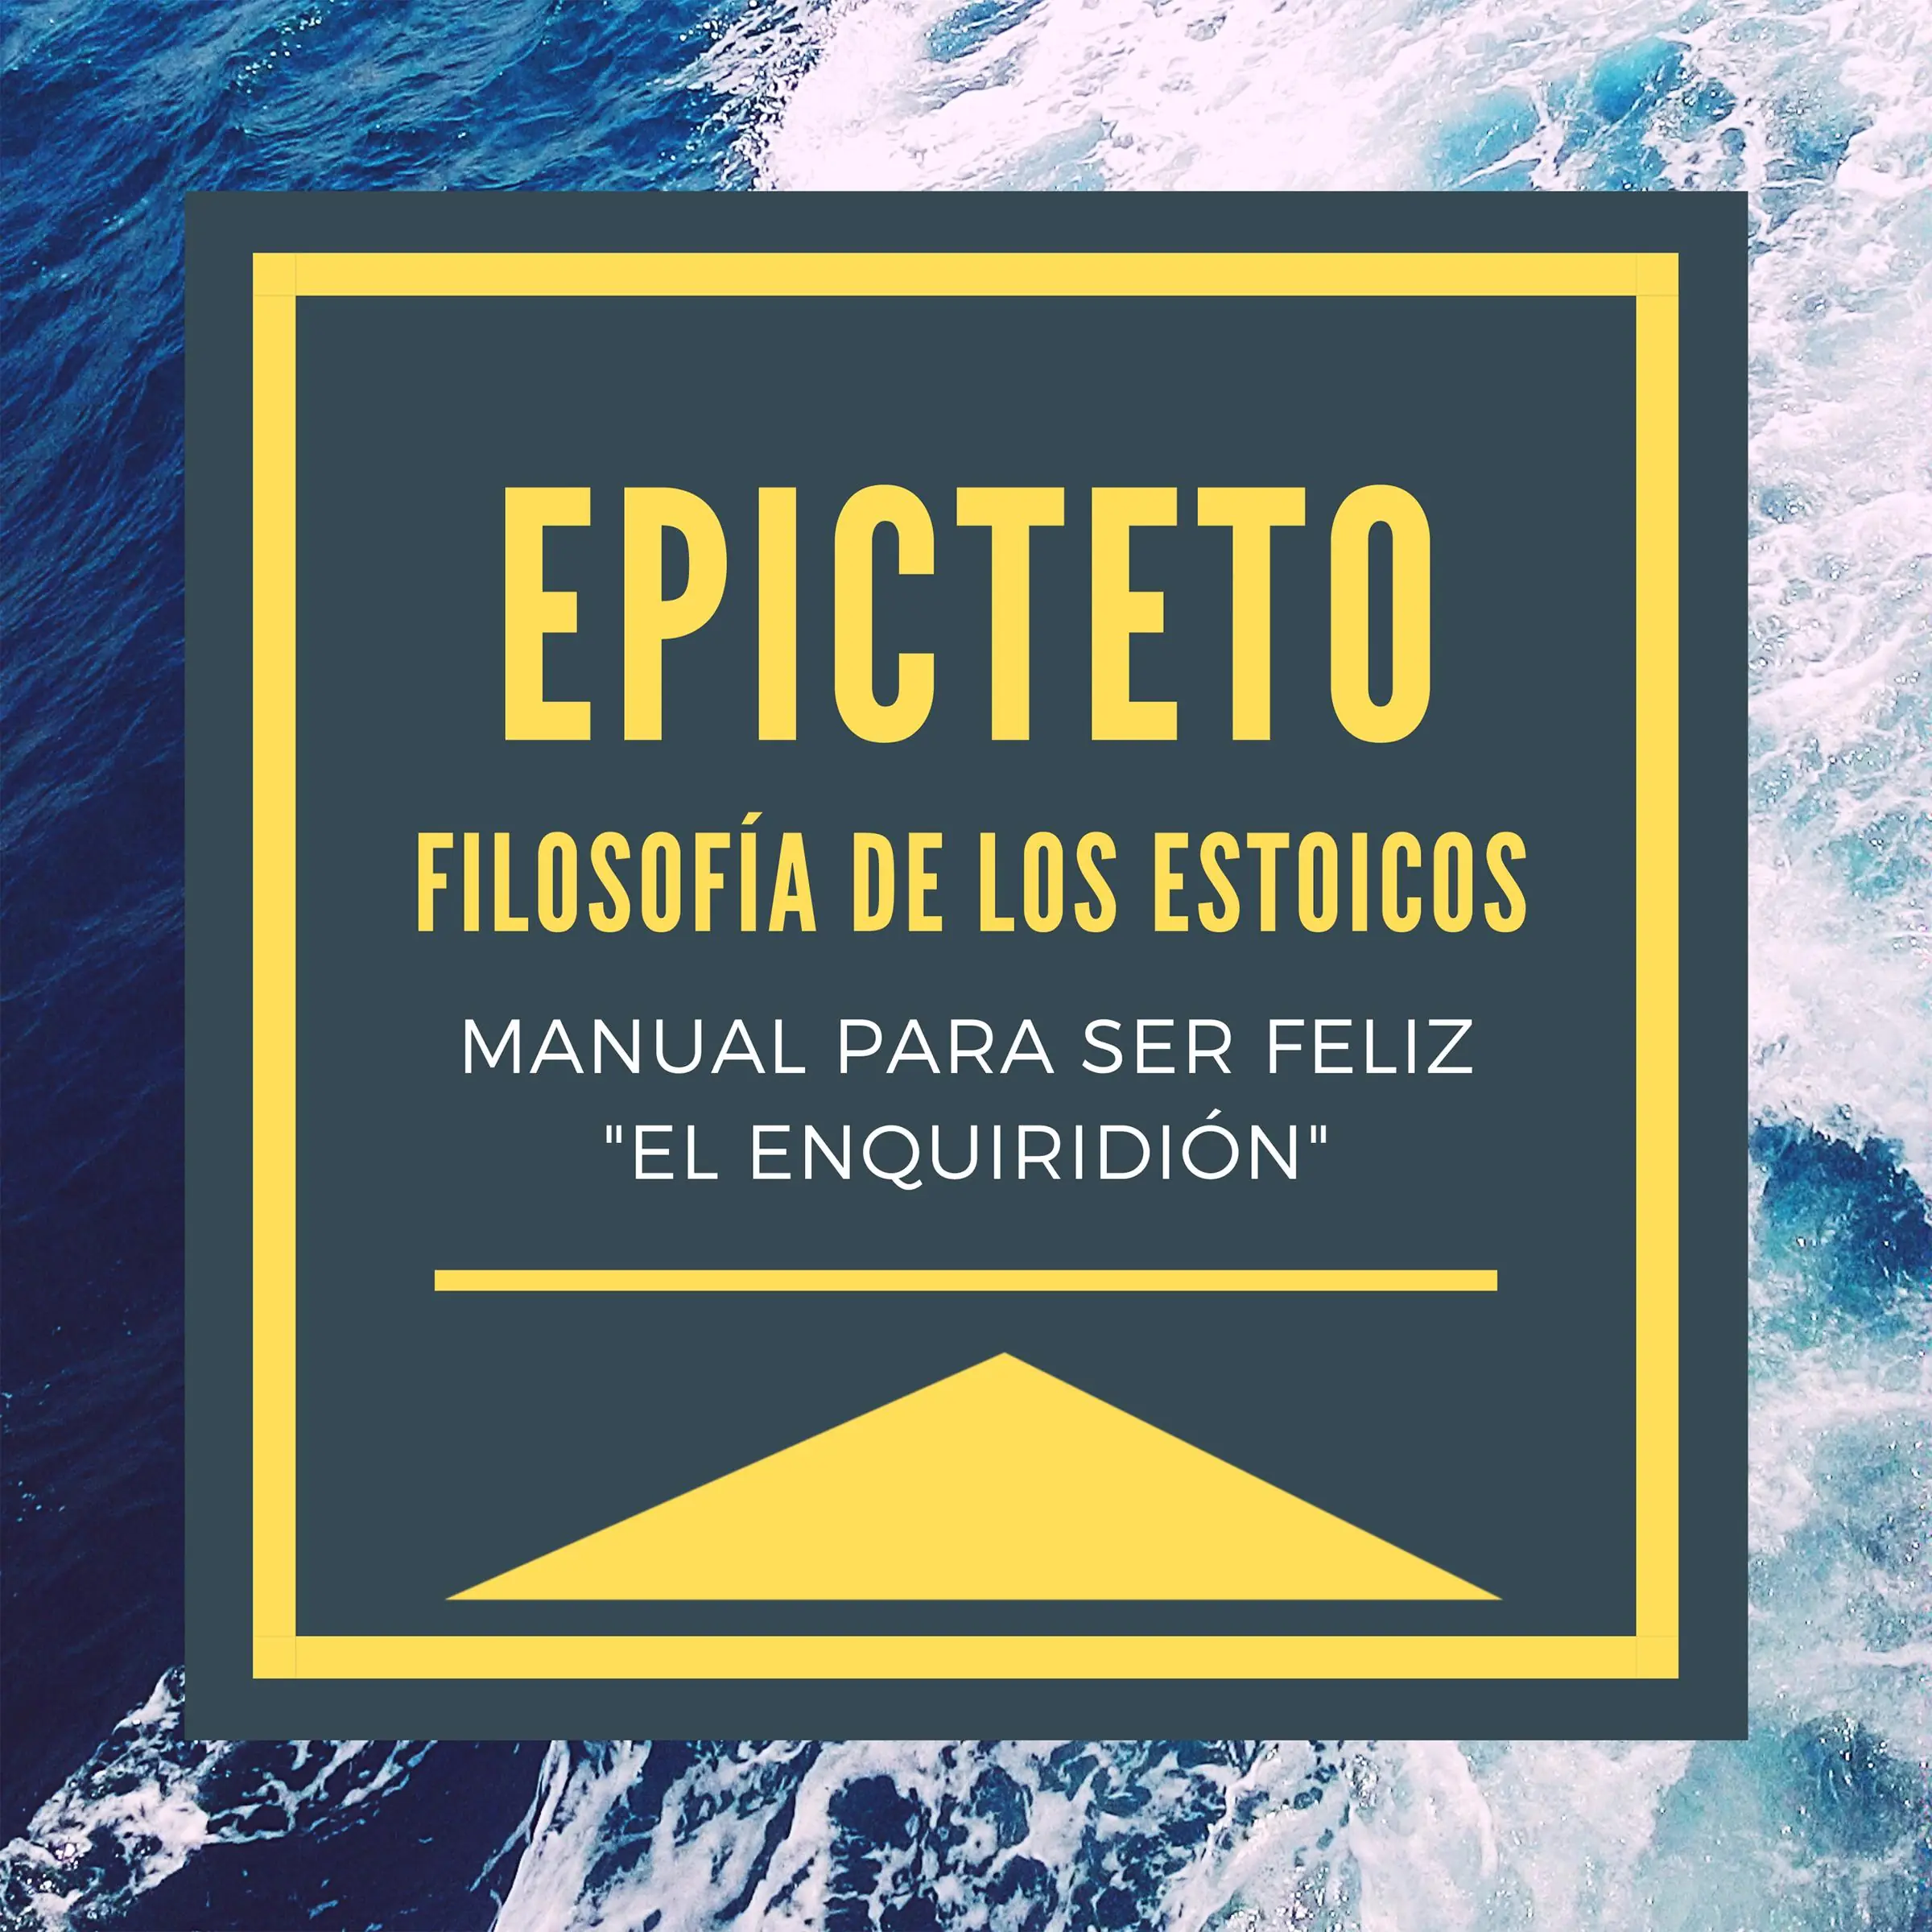 Epicteto - Filosofia de los Estoicos. Manual para ser Feliz "El Enquiridión" by Epicteto